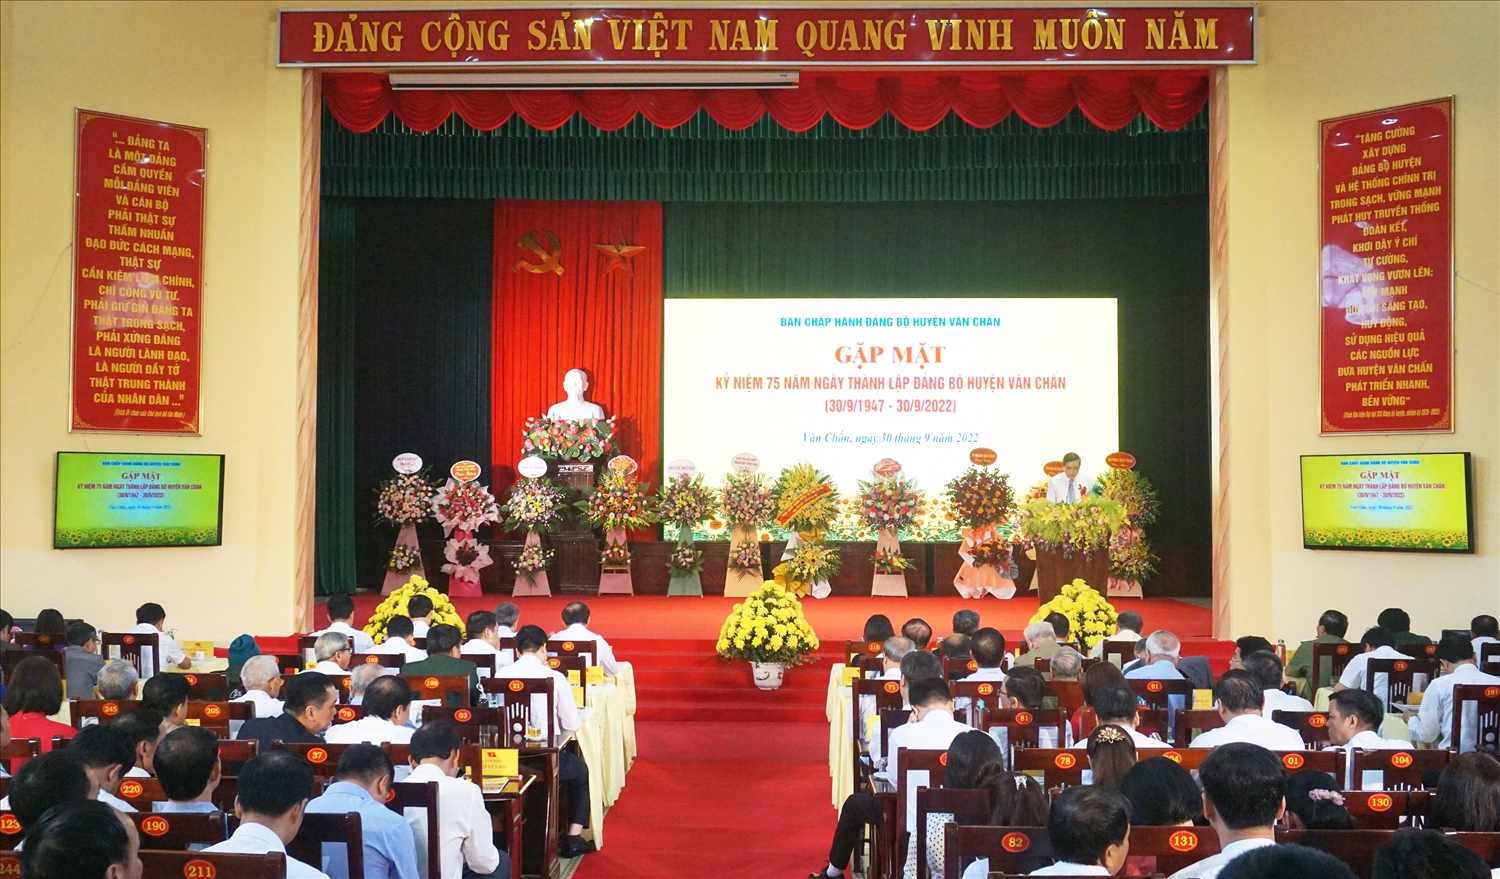 Hiện nay, Đảng bộ huyện Văn Chấn có trên 7.500 đảng viên